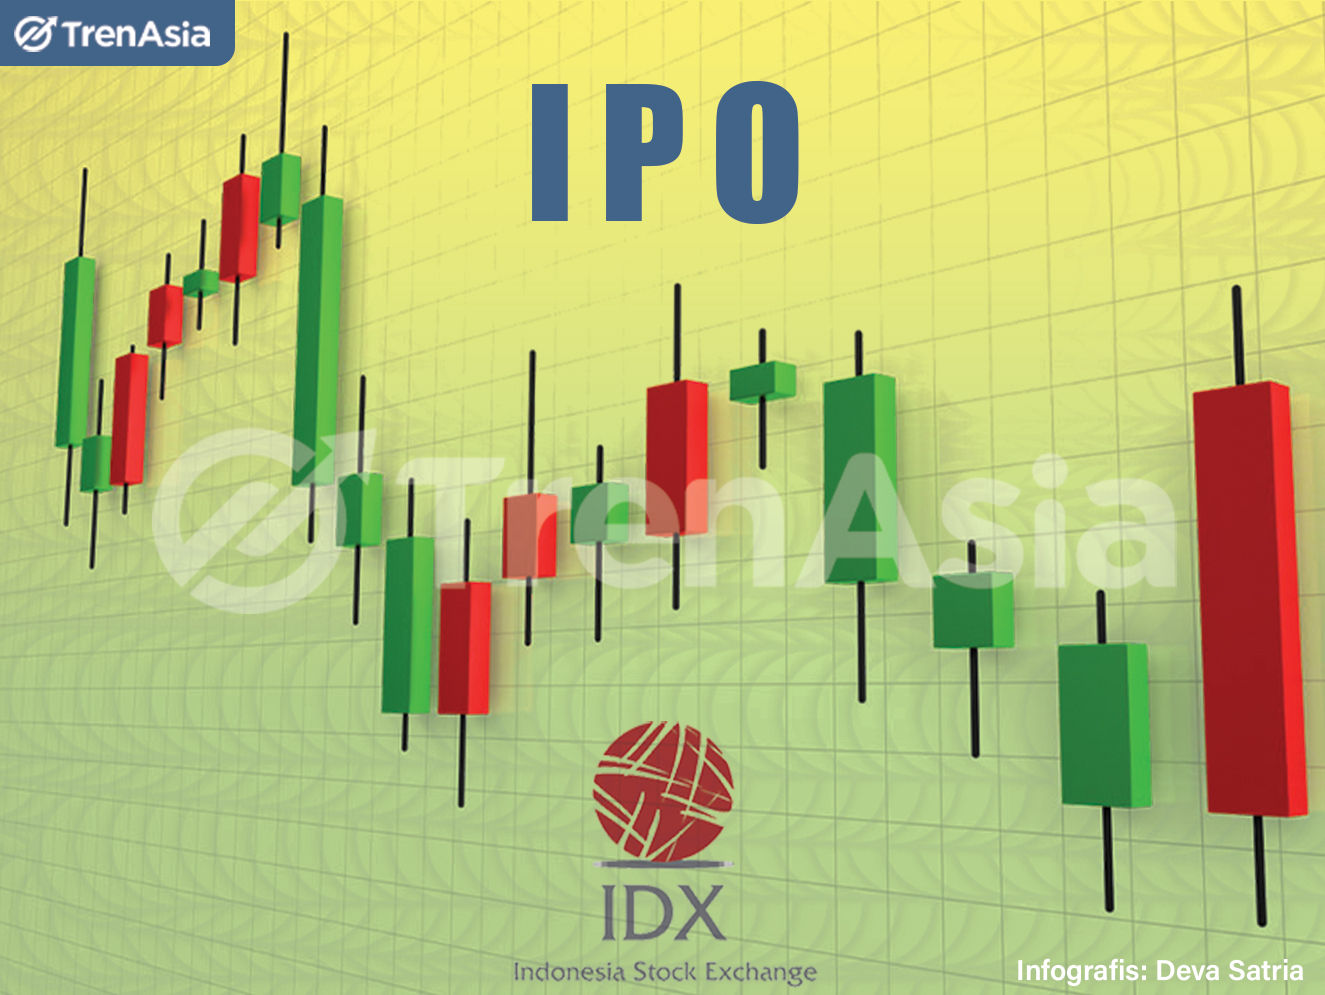 Ilustrasi penawaran umum perdana saham (initial public offering/IPO) di PT Bursa Efek Indonesia (BEI). Ilustrator: Deva Satria/TrenAsia